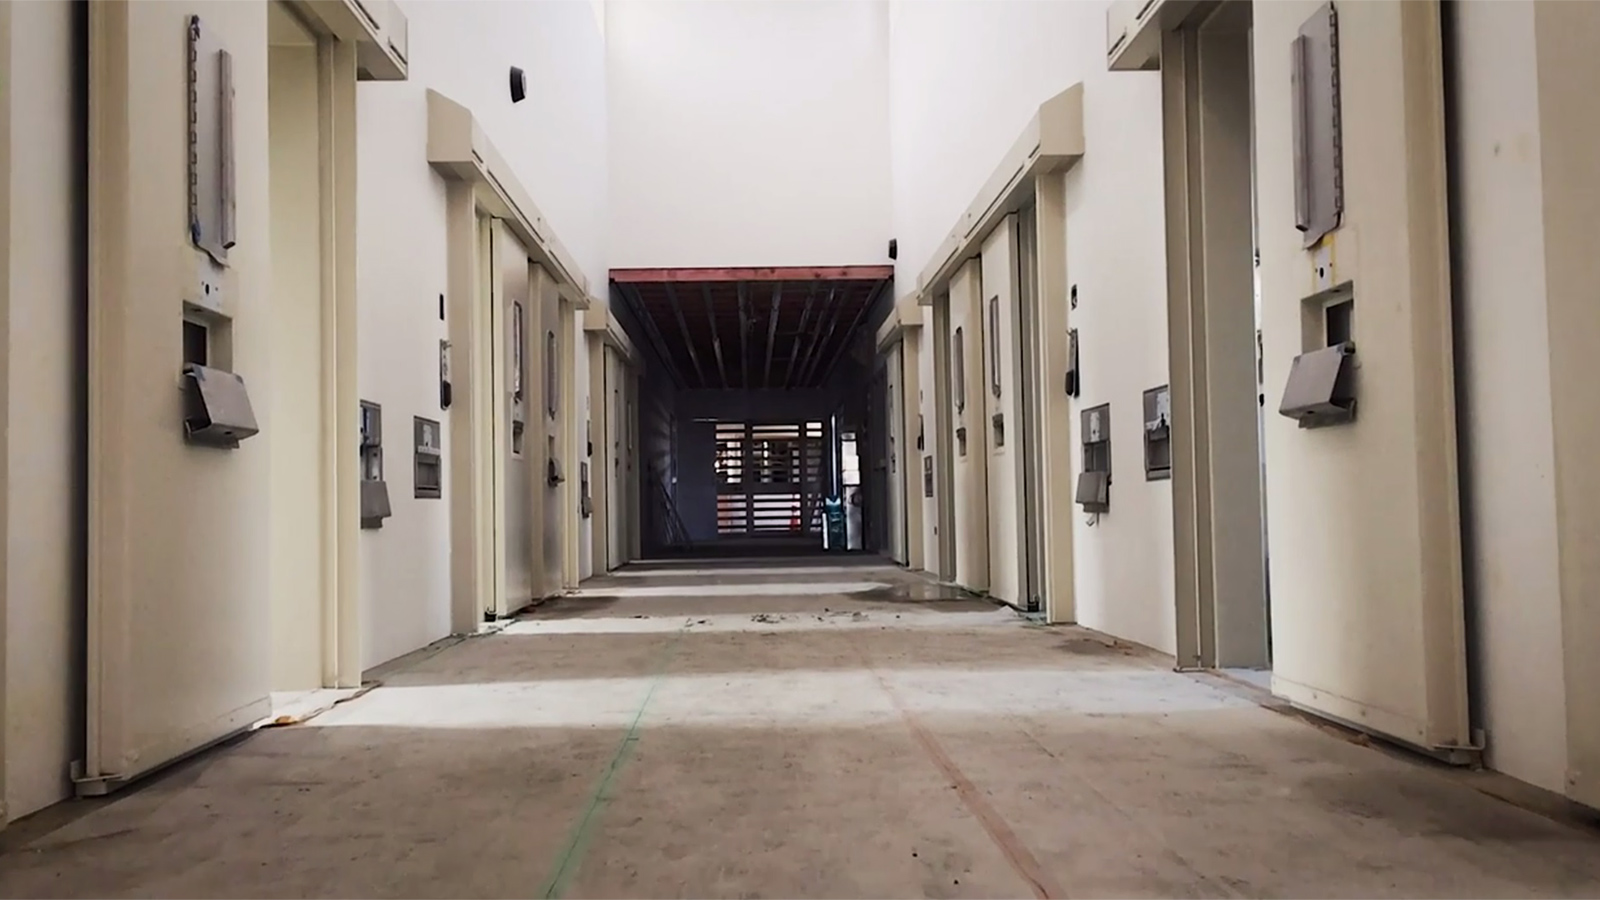 إحدى الصور من داخل سجن باريموريمو (نيوزيلندا هيرالد)